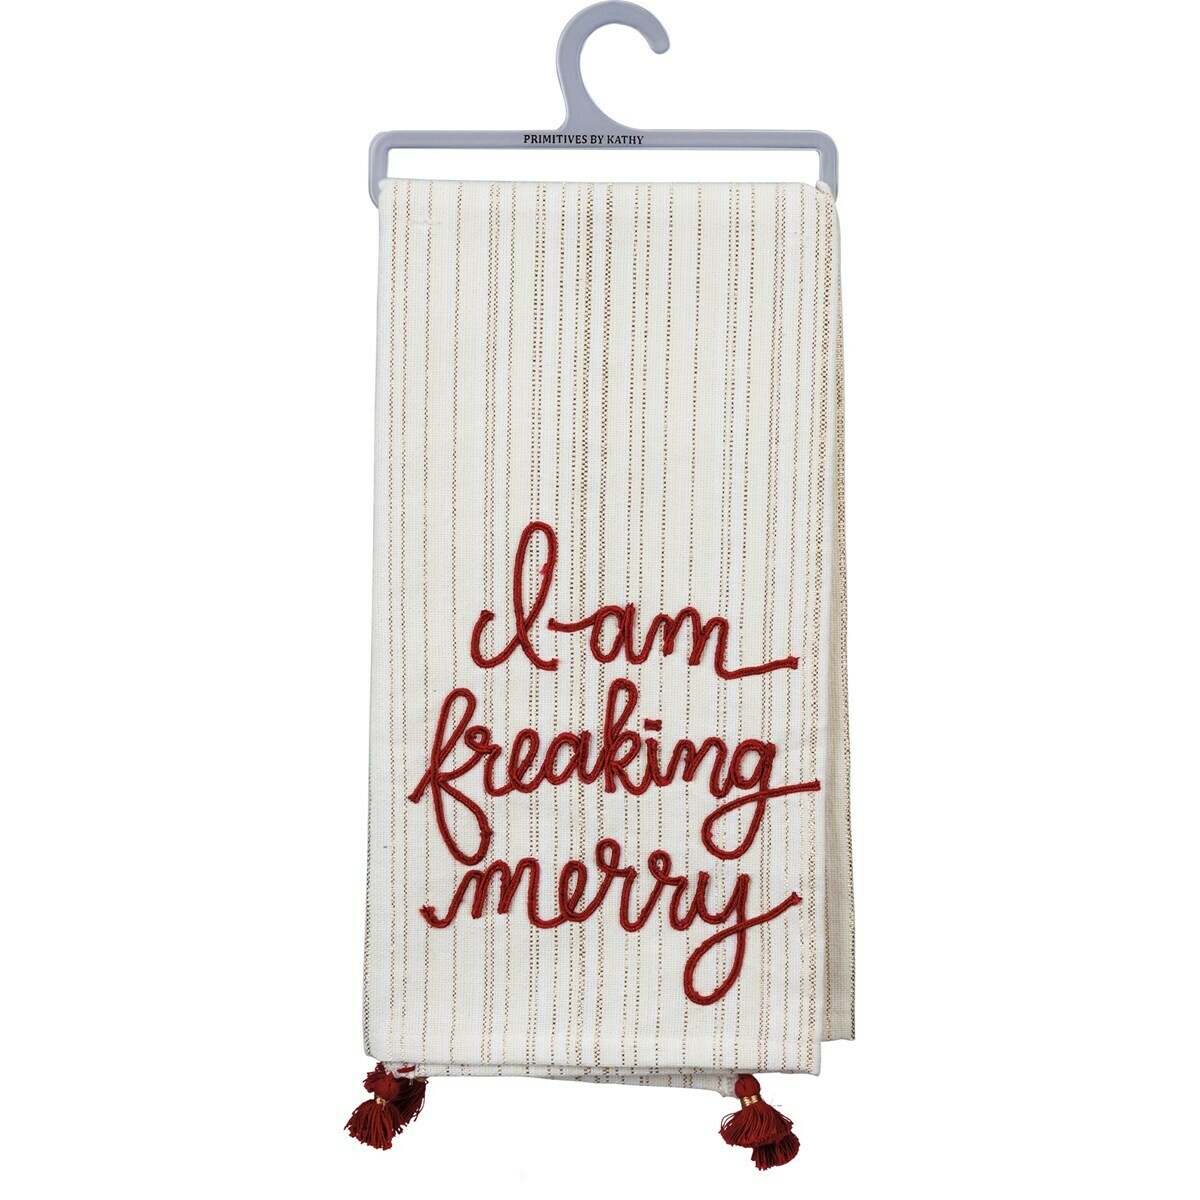 Freaking Merry Towel